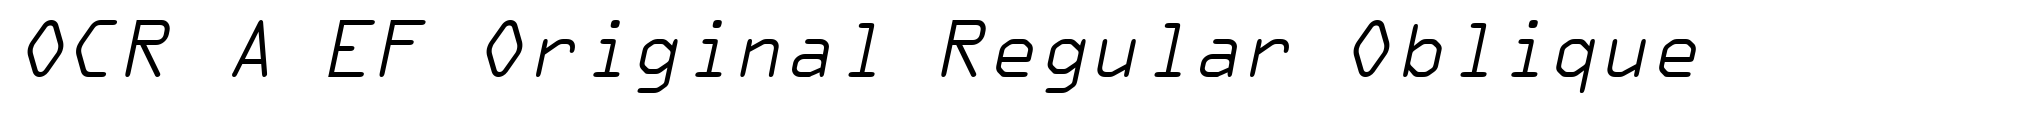 OCR A EF Original Regular Oblique image